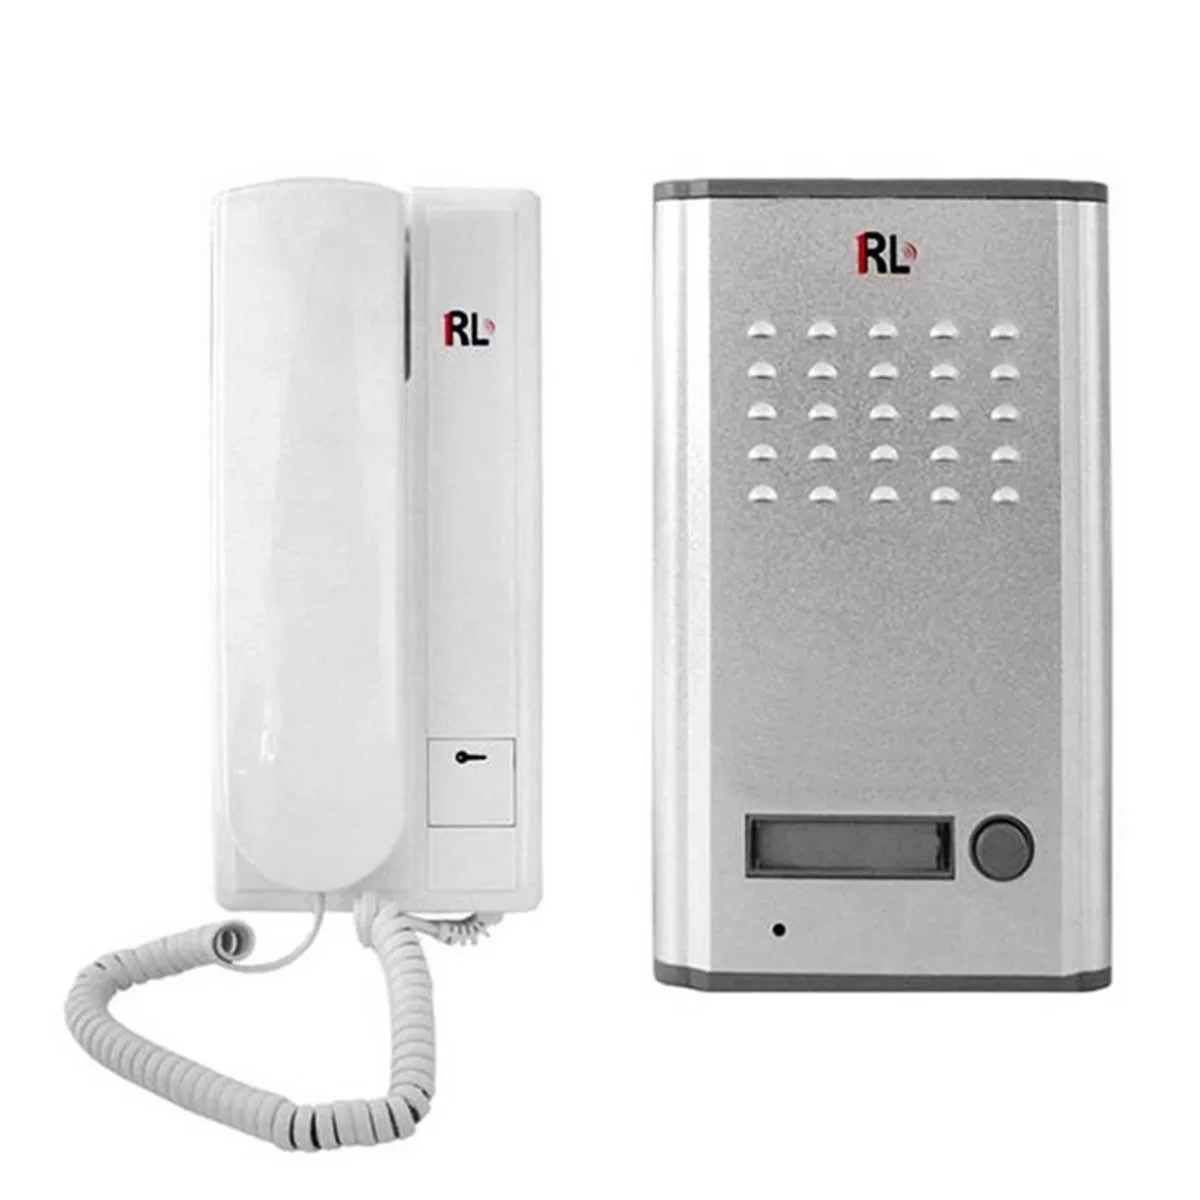 Ολοκληρωμένο Σύστημα Θυροτηλεφώνου με Εξωτερική και Εσωτερική Μονάδα RL-3208A